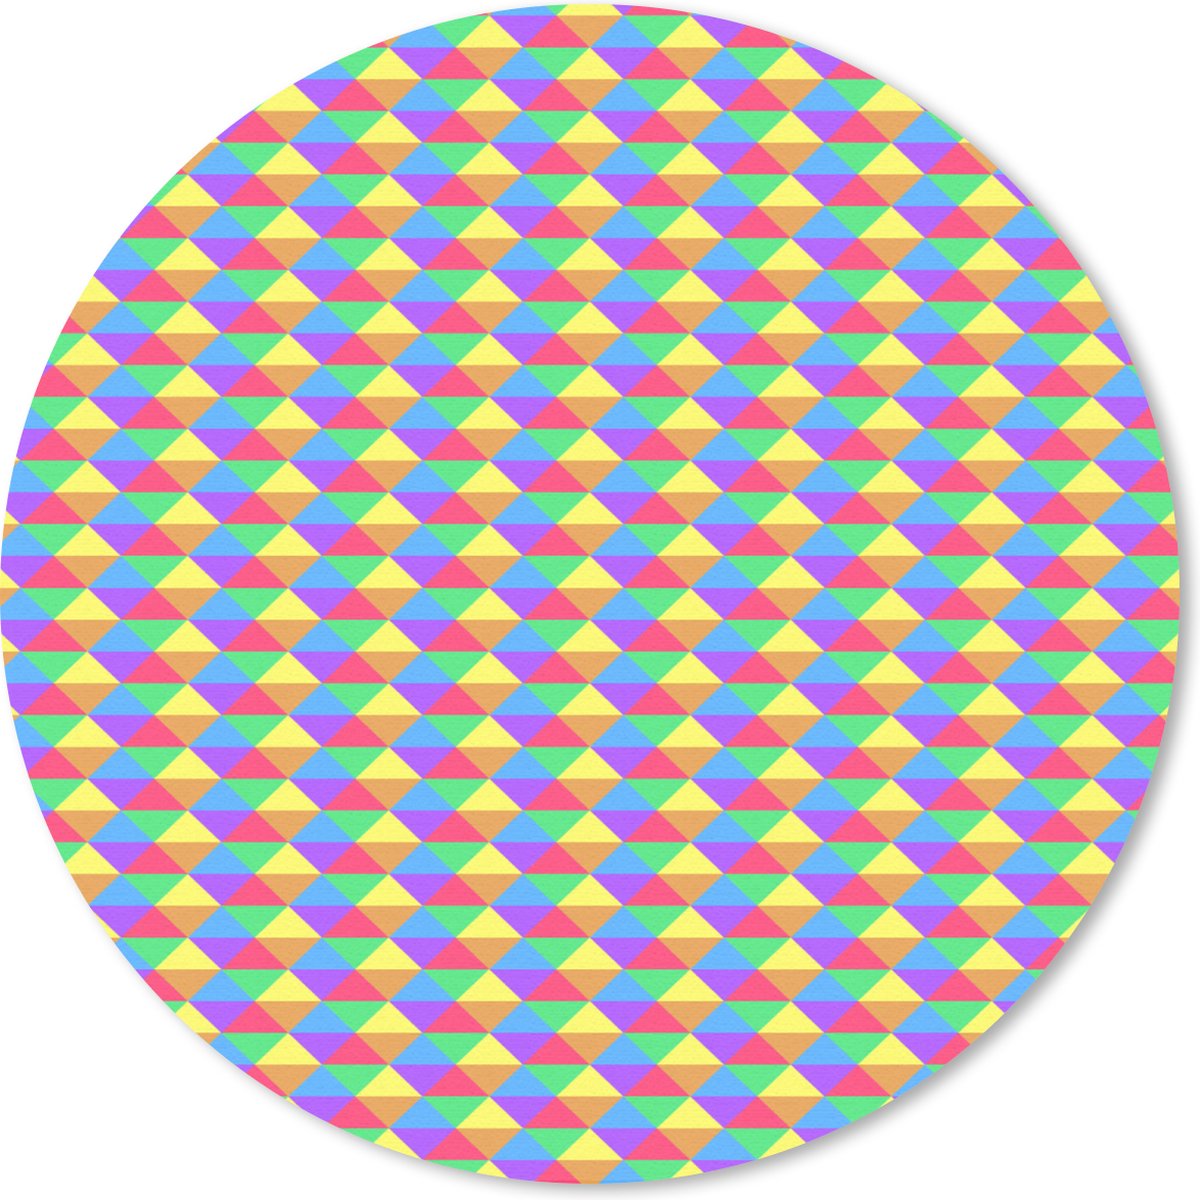 Muismat - Mousepad - Rond - Hexagon - Regenboog - Patroon - 50x50 cm - Ronde muismat